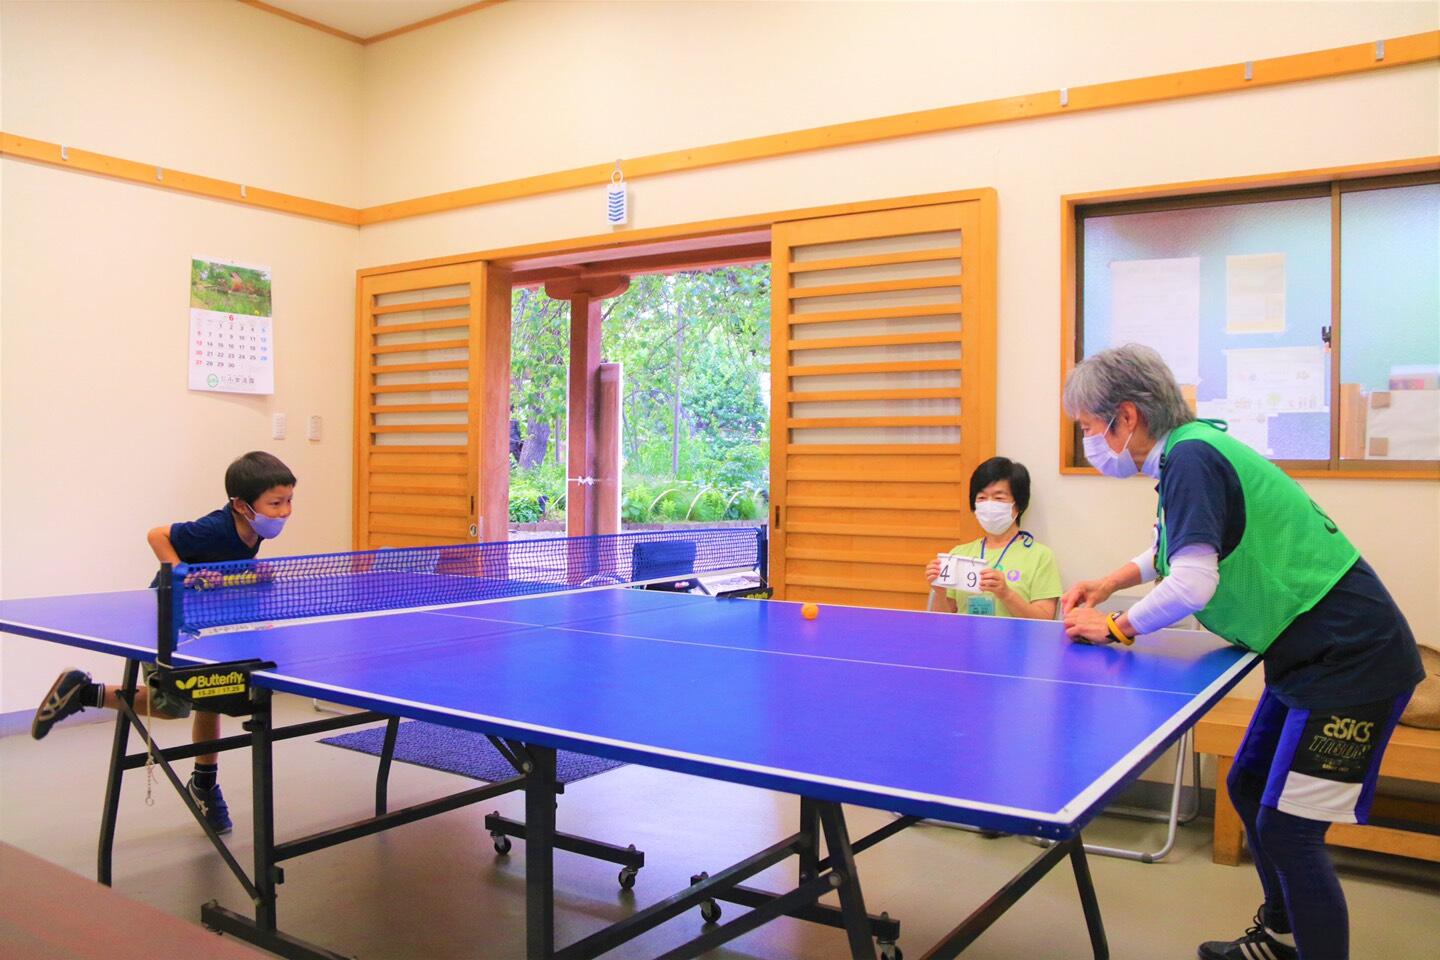 卓球台とピンポン玉を使って、筒を両手に持った男の子と増田理事長が対決している様子